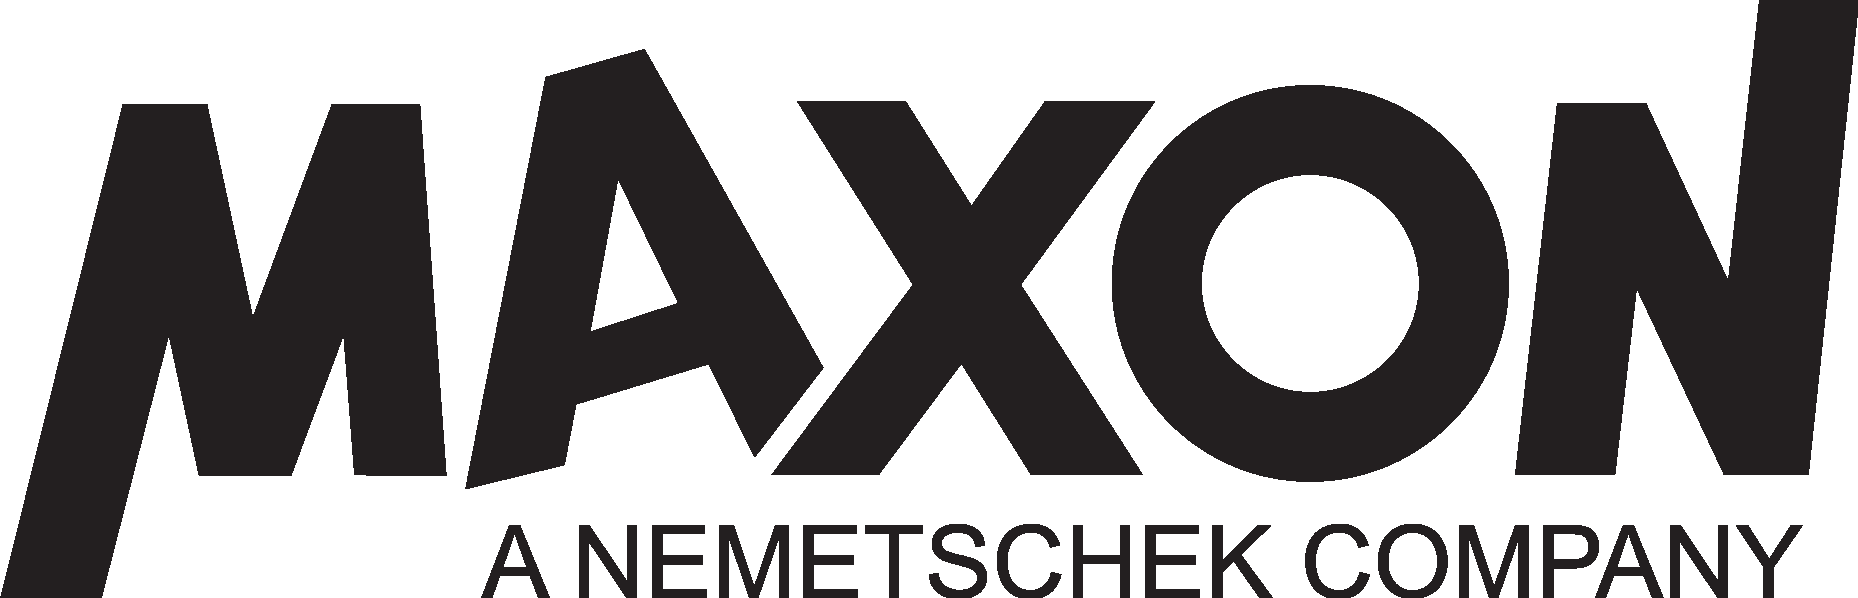 Maxon Computer GmbH Logo Vector